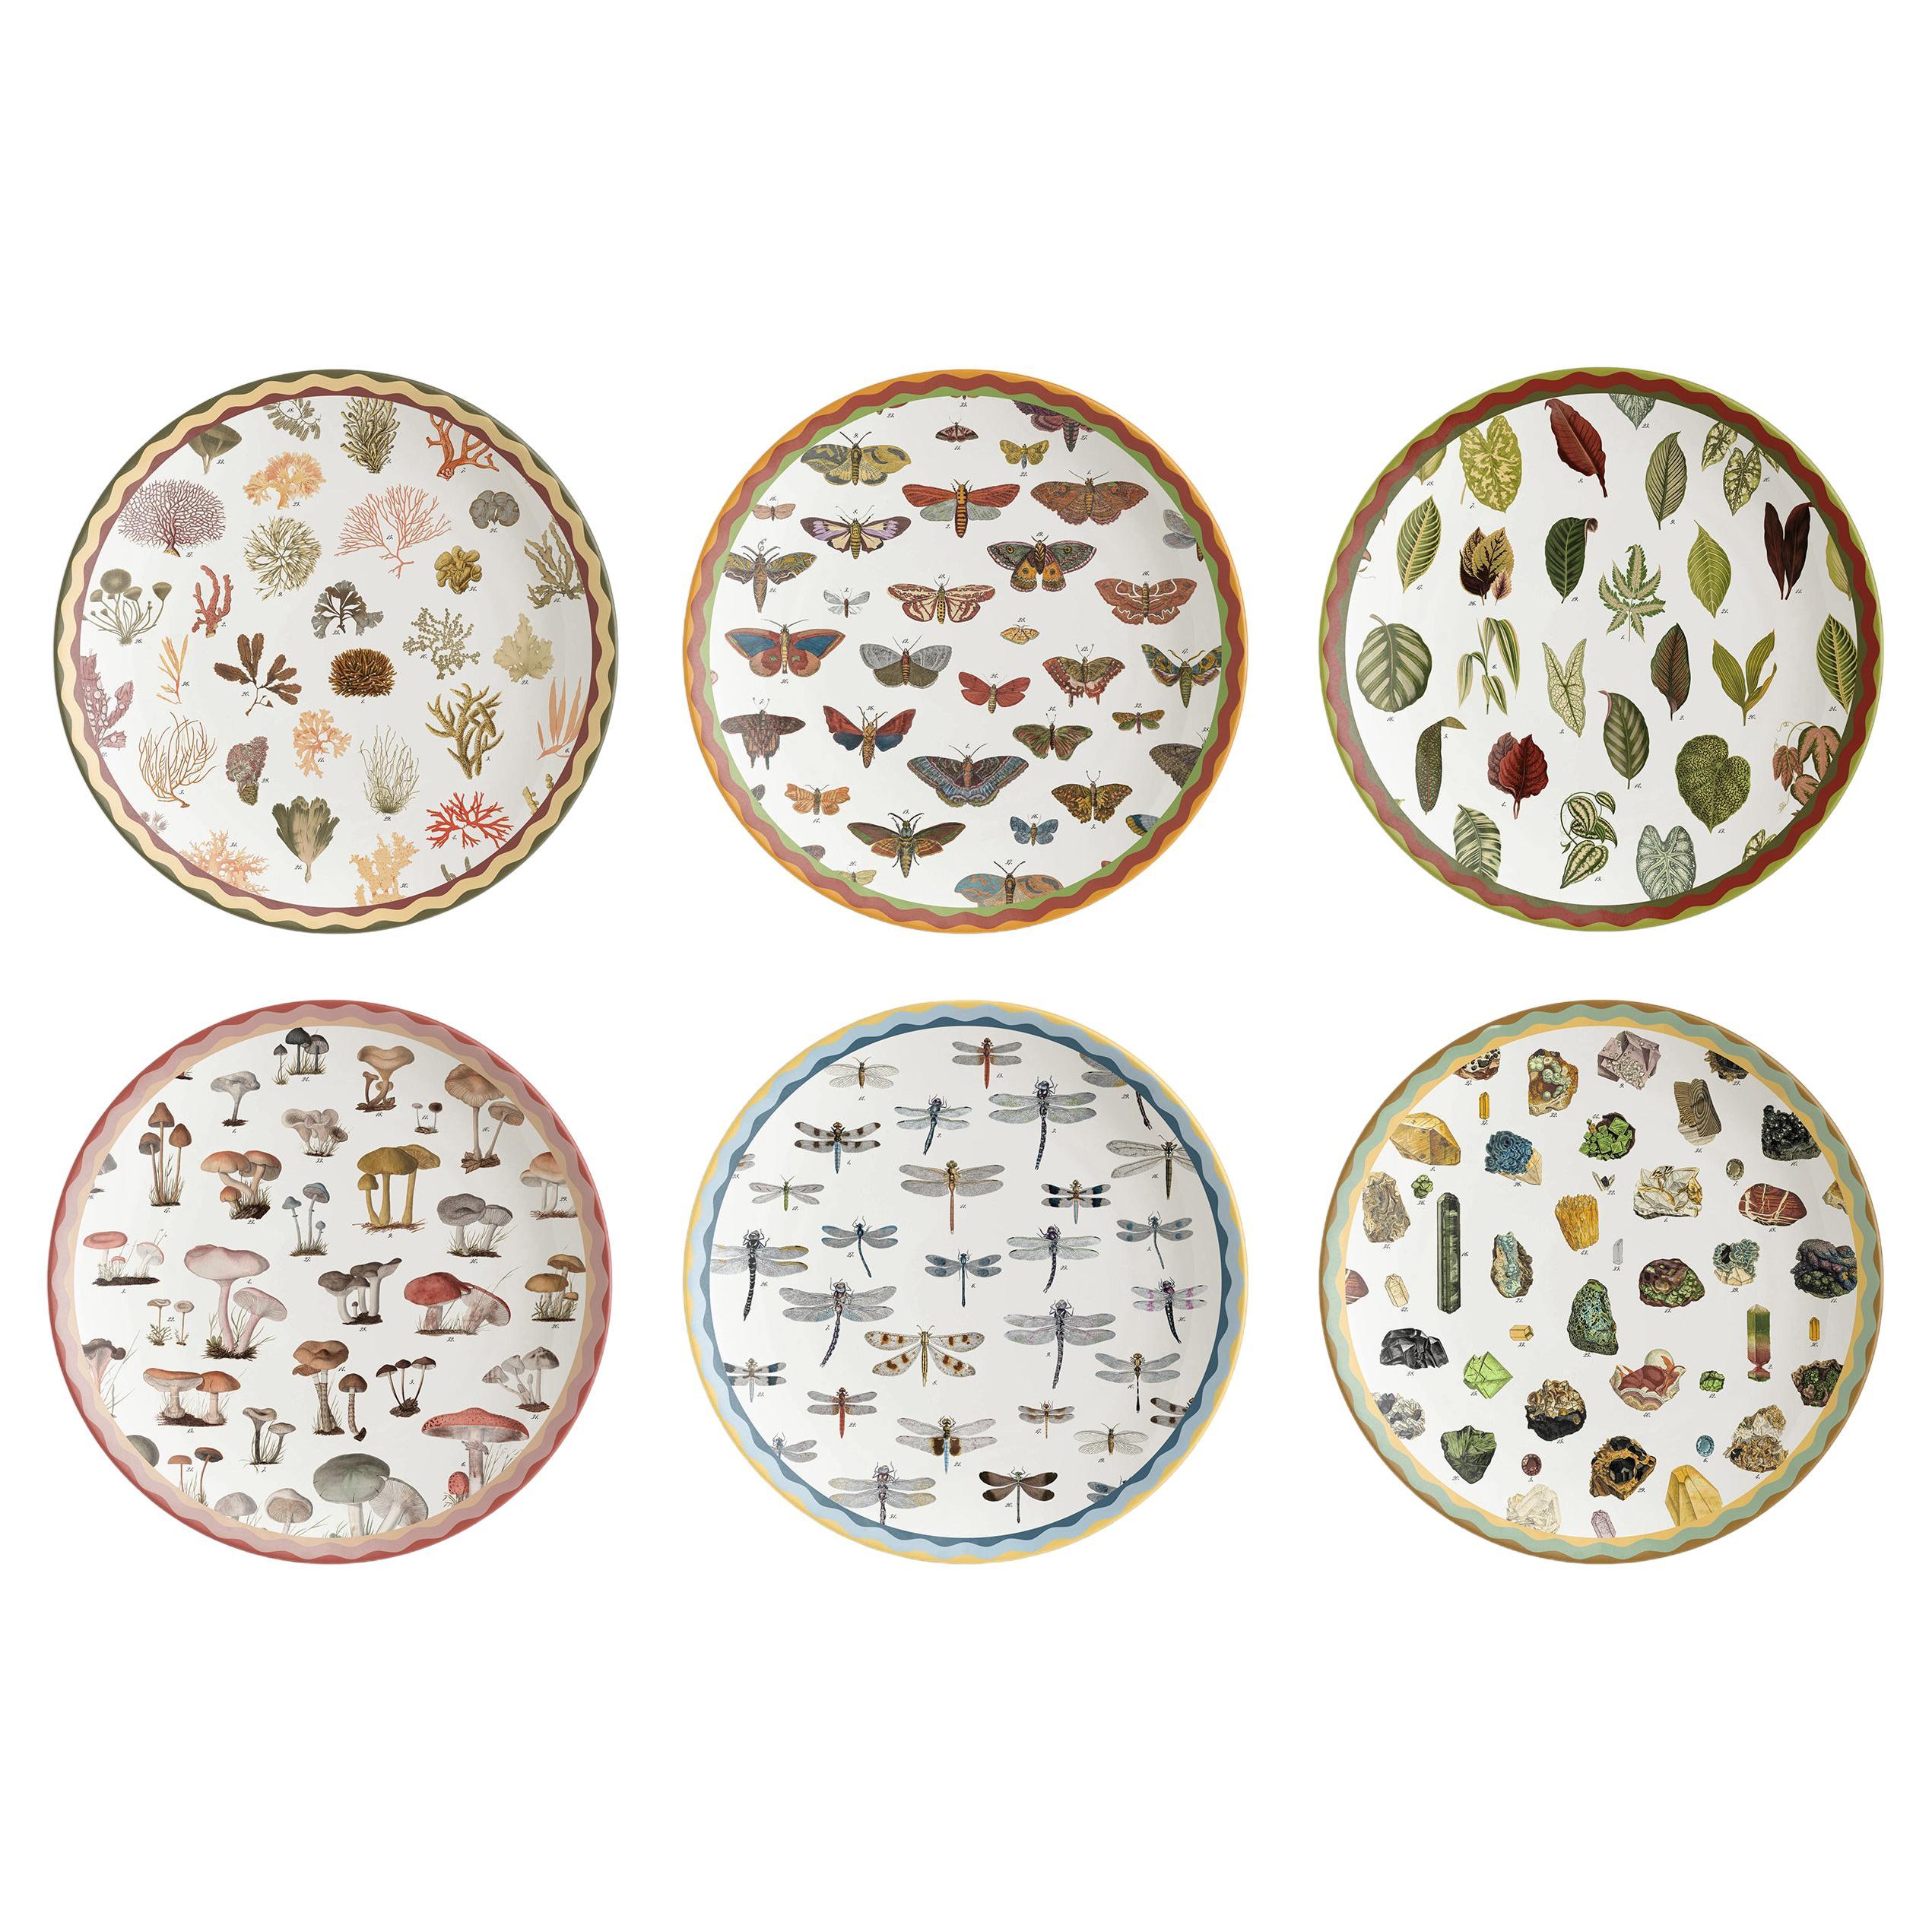 Meuble de rangement de curiosités, six plateaux en porcelaine décorés contemporains